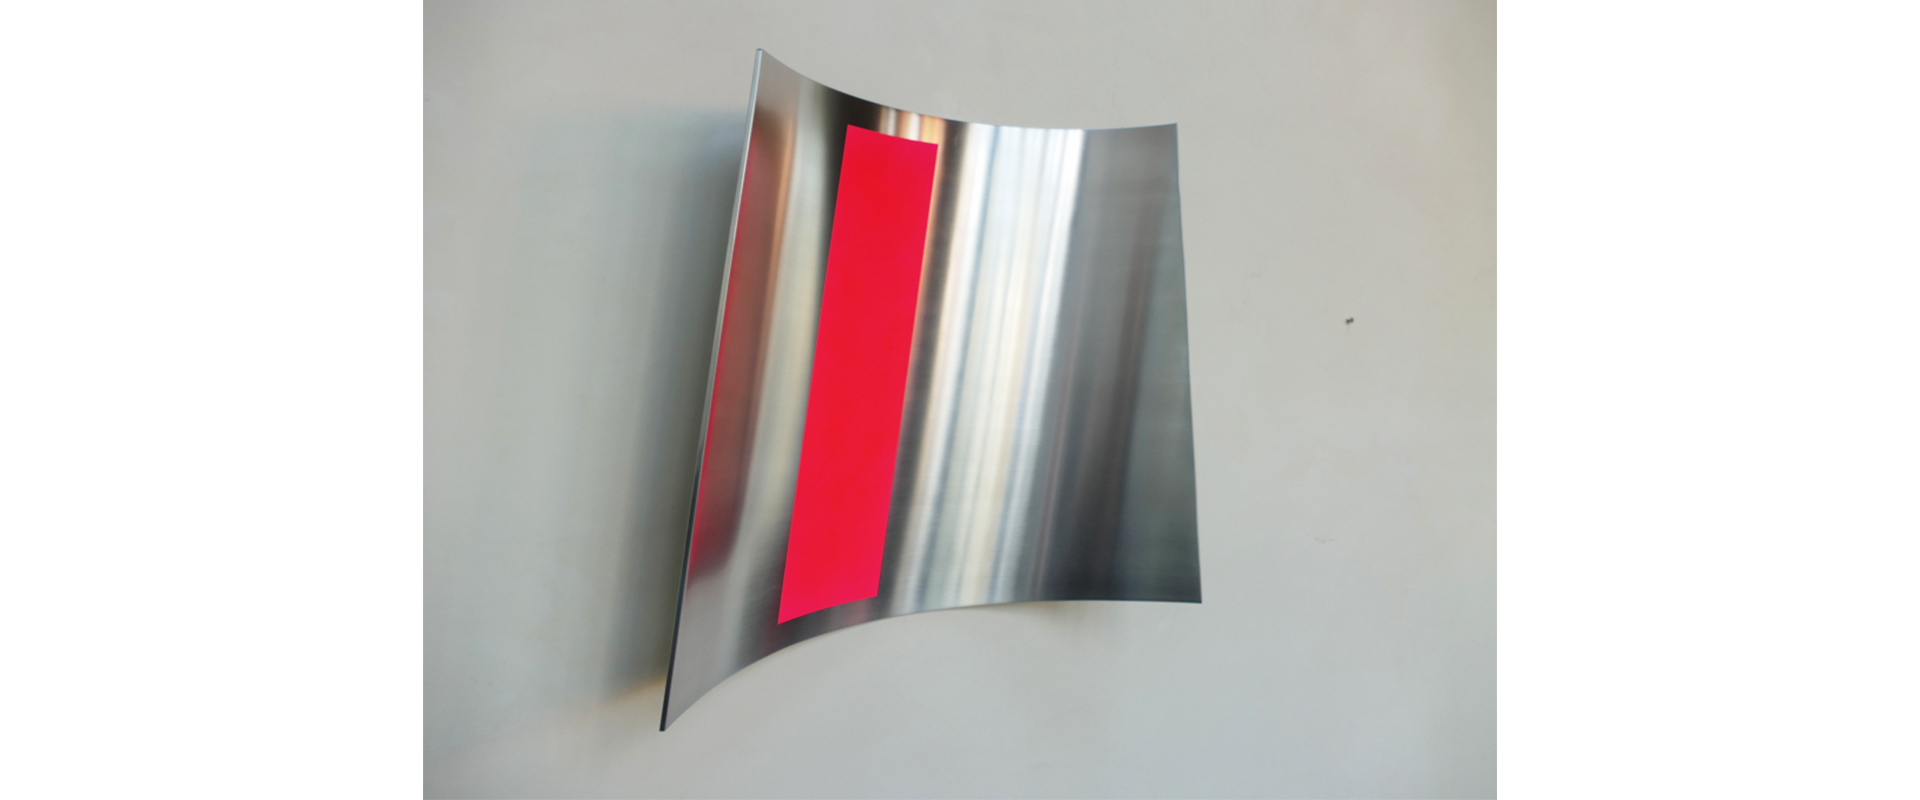 Raumzeichen #466 – 2021, Lack auf Aluminium, 53 x 50 x 8 cm